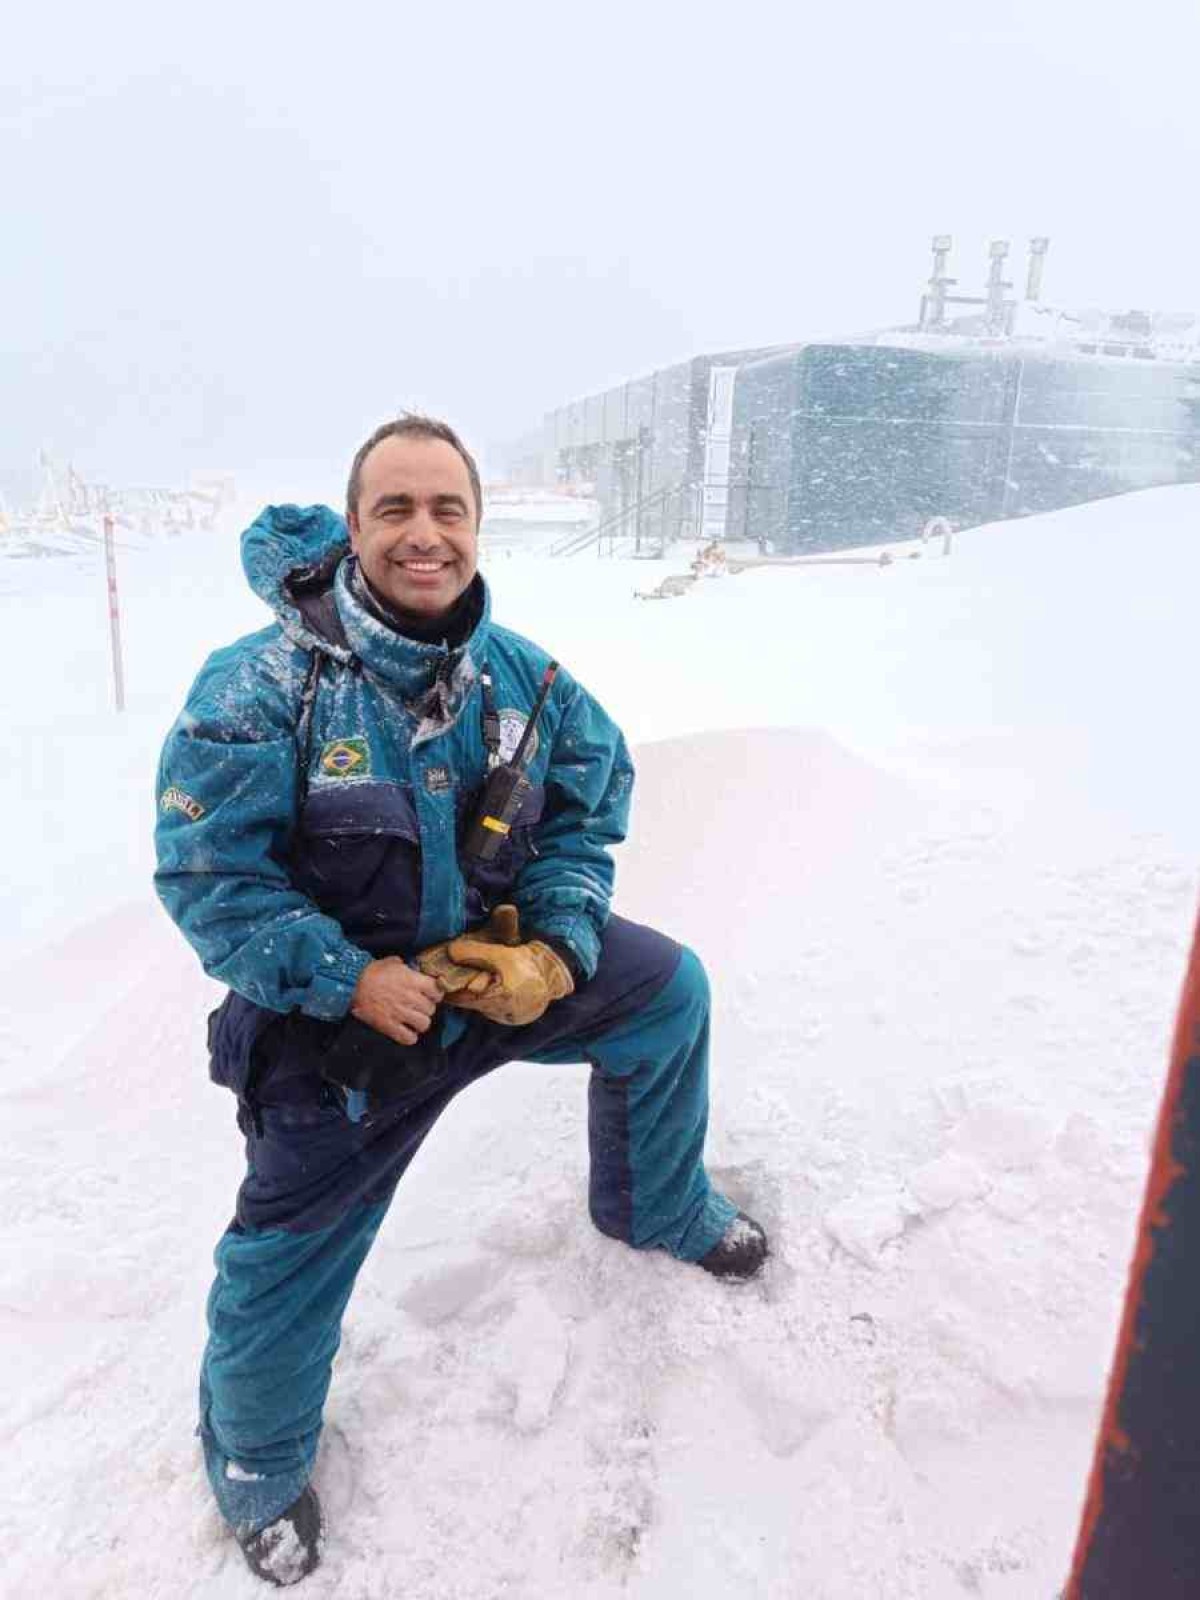 Chefe, síndico e embaixador: a rotina do comandante da Estação Antártica